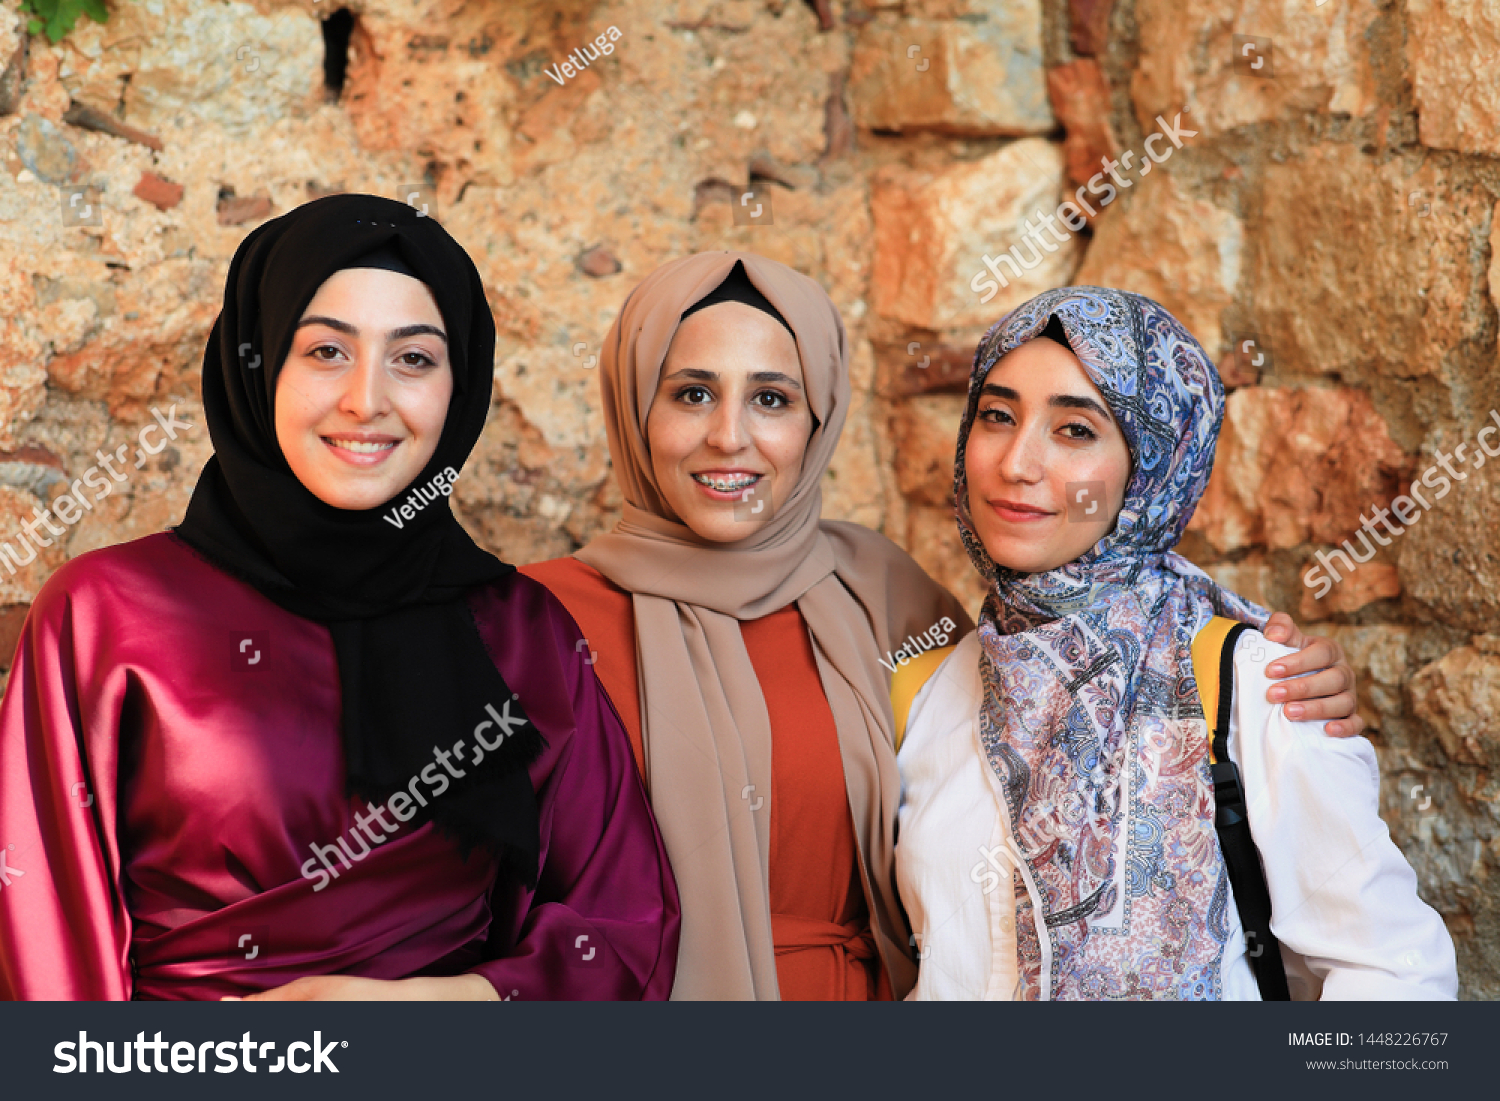 Turkey girls for friendship